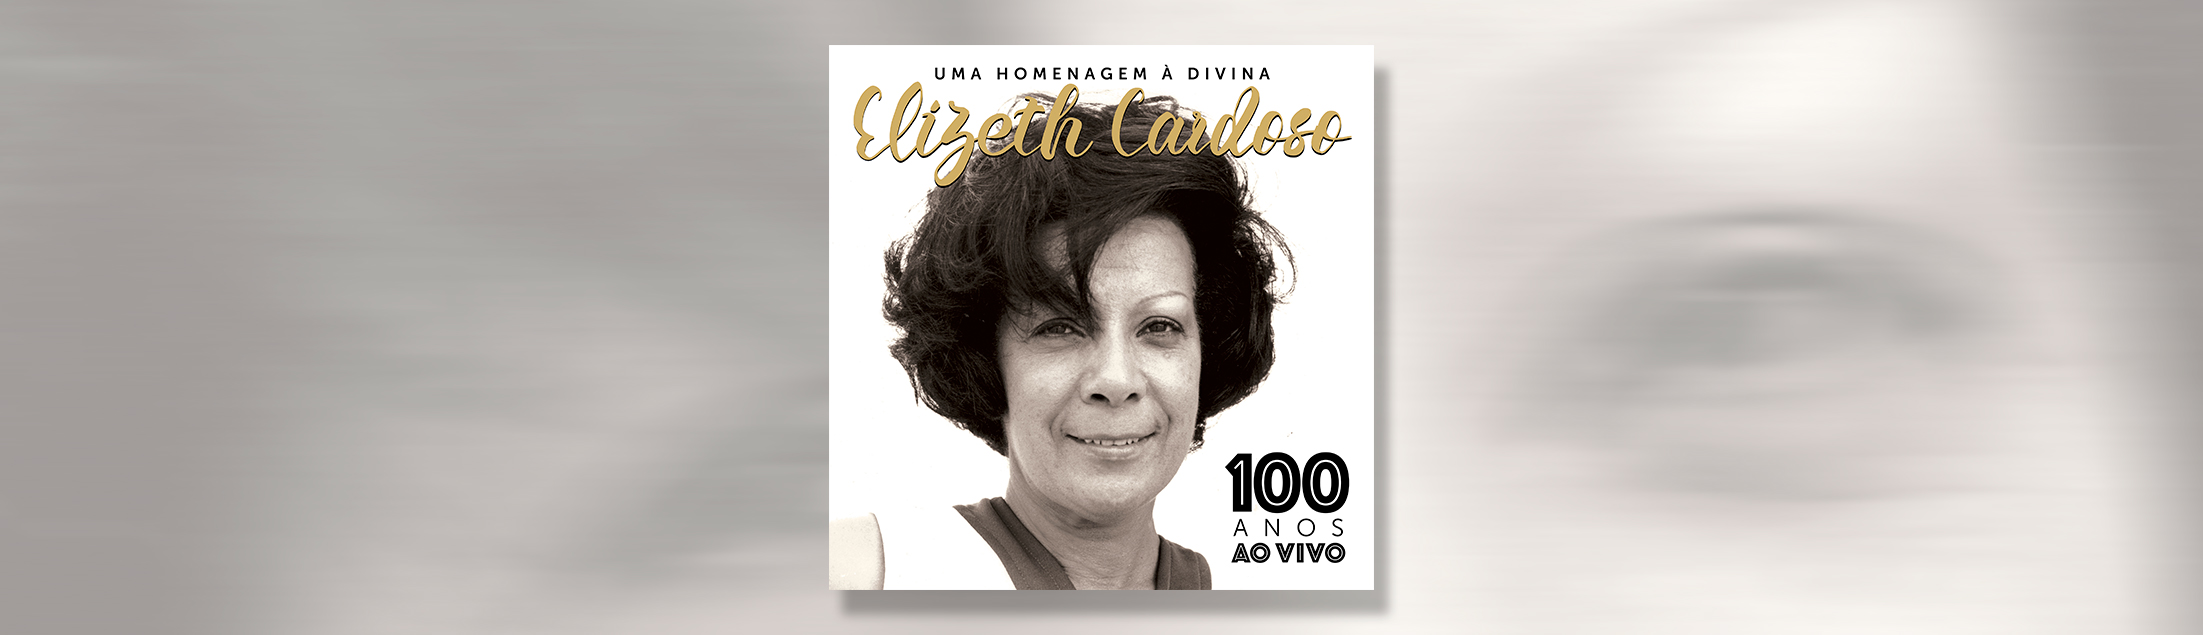 Lançamento: Uma homenagem à Divina ELIZETH CARDOSO - 100 anos ao vivo